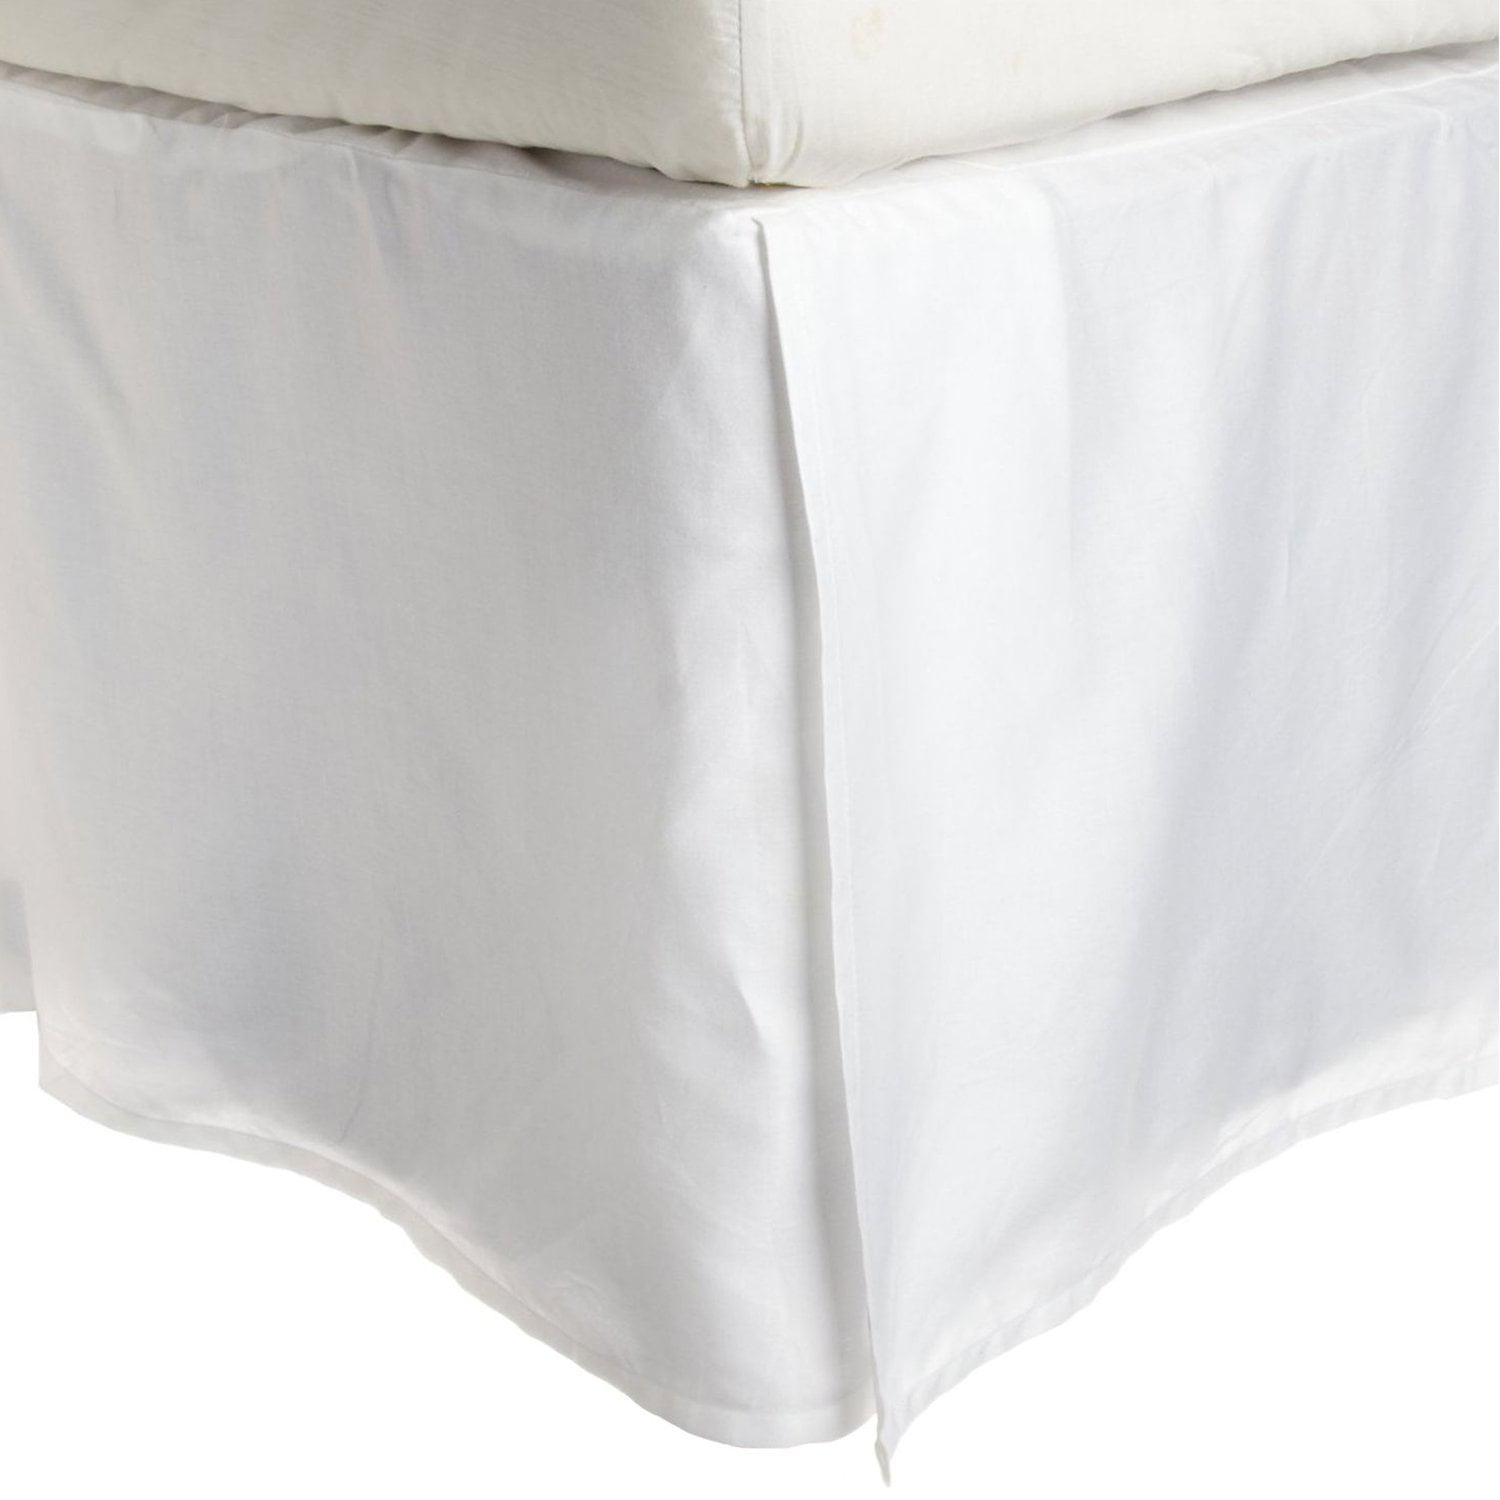 New Fieldcrest King Size White Hotel Sateen Bed Skirt 15" Drop 